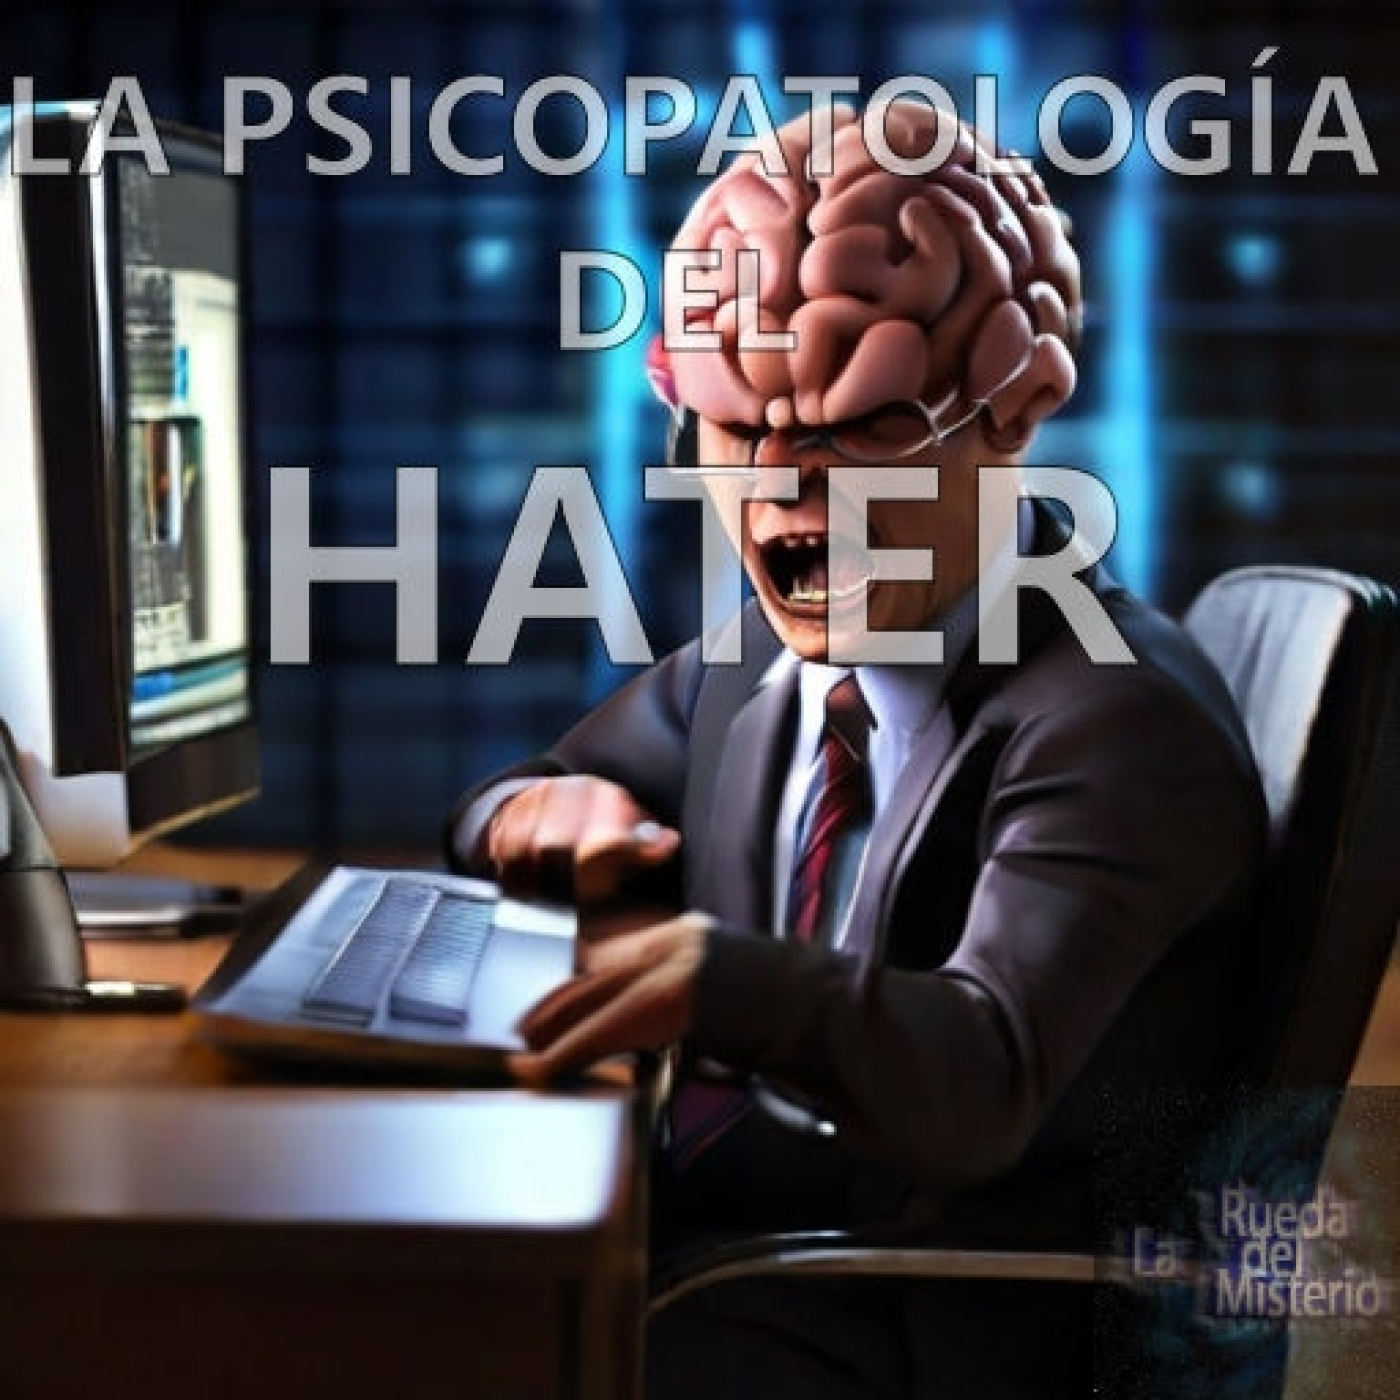 La Psicopatología del Hater. - Episodio exclusivo para mecenas